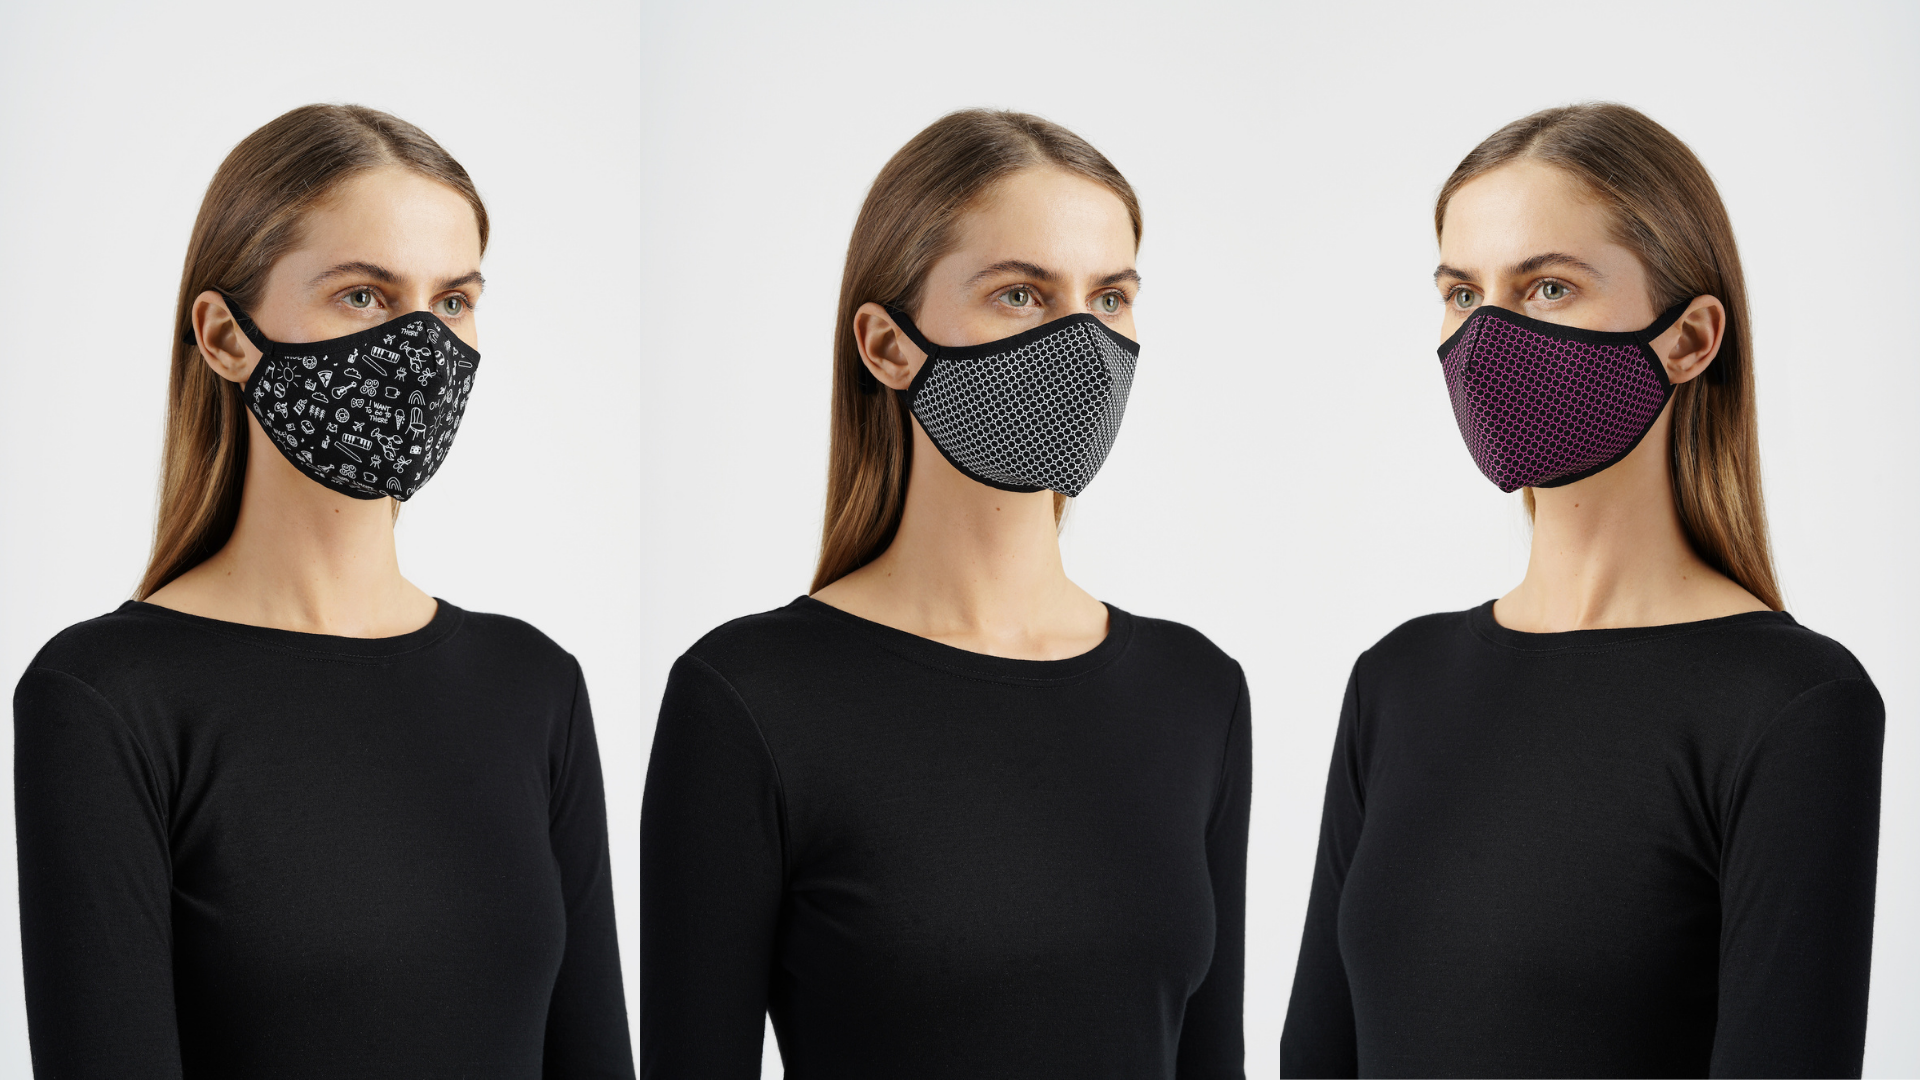 „Utenos trikotažas“ pradeda prekybą antimikrobinėmis veido kaukėmis